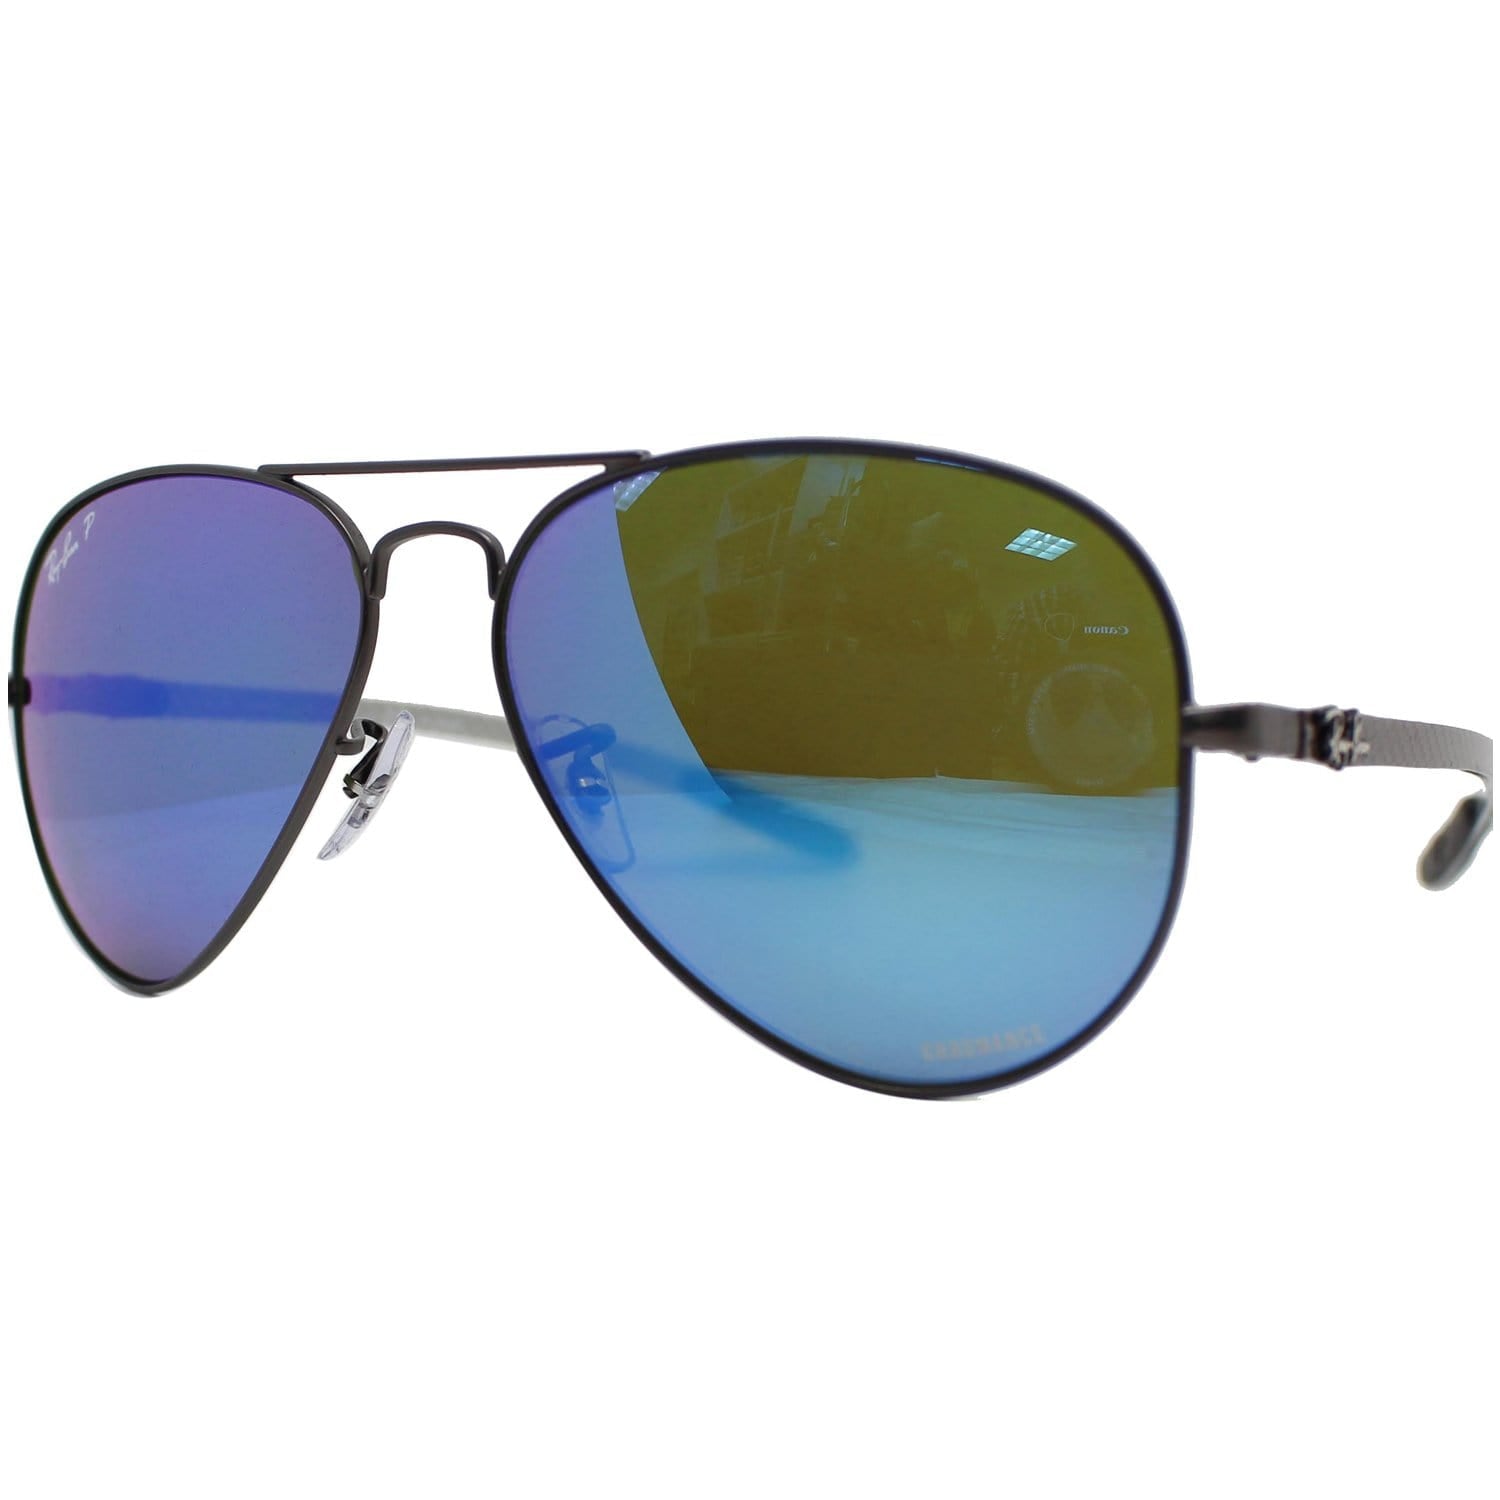 Ray Ban Rb8317ch 029 A1 Sunglasses Blue Mirror Polarized Chromance Len